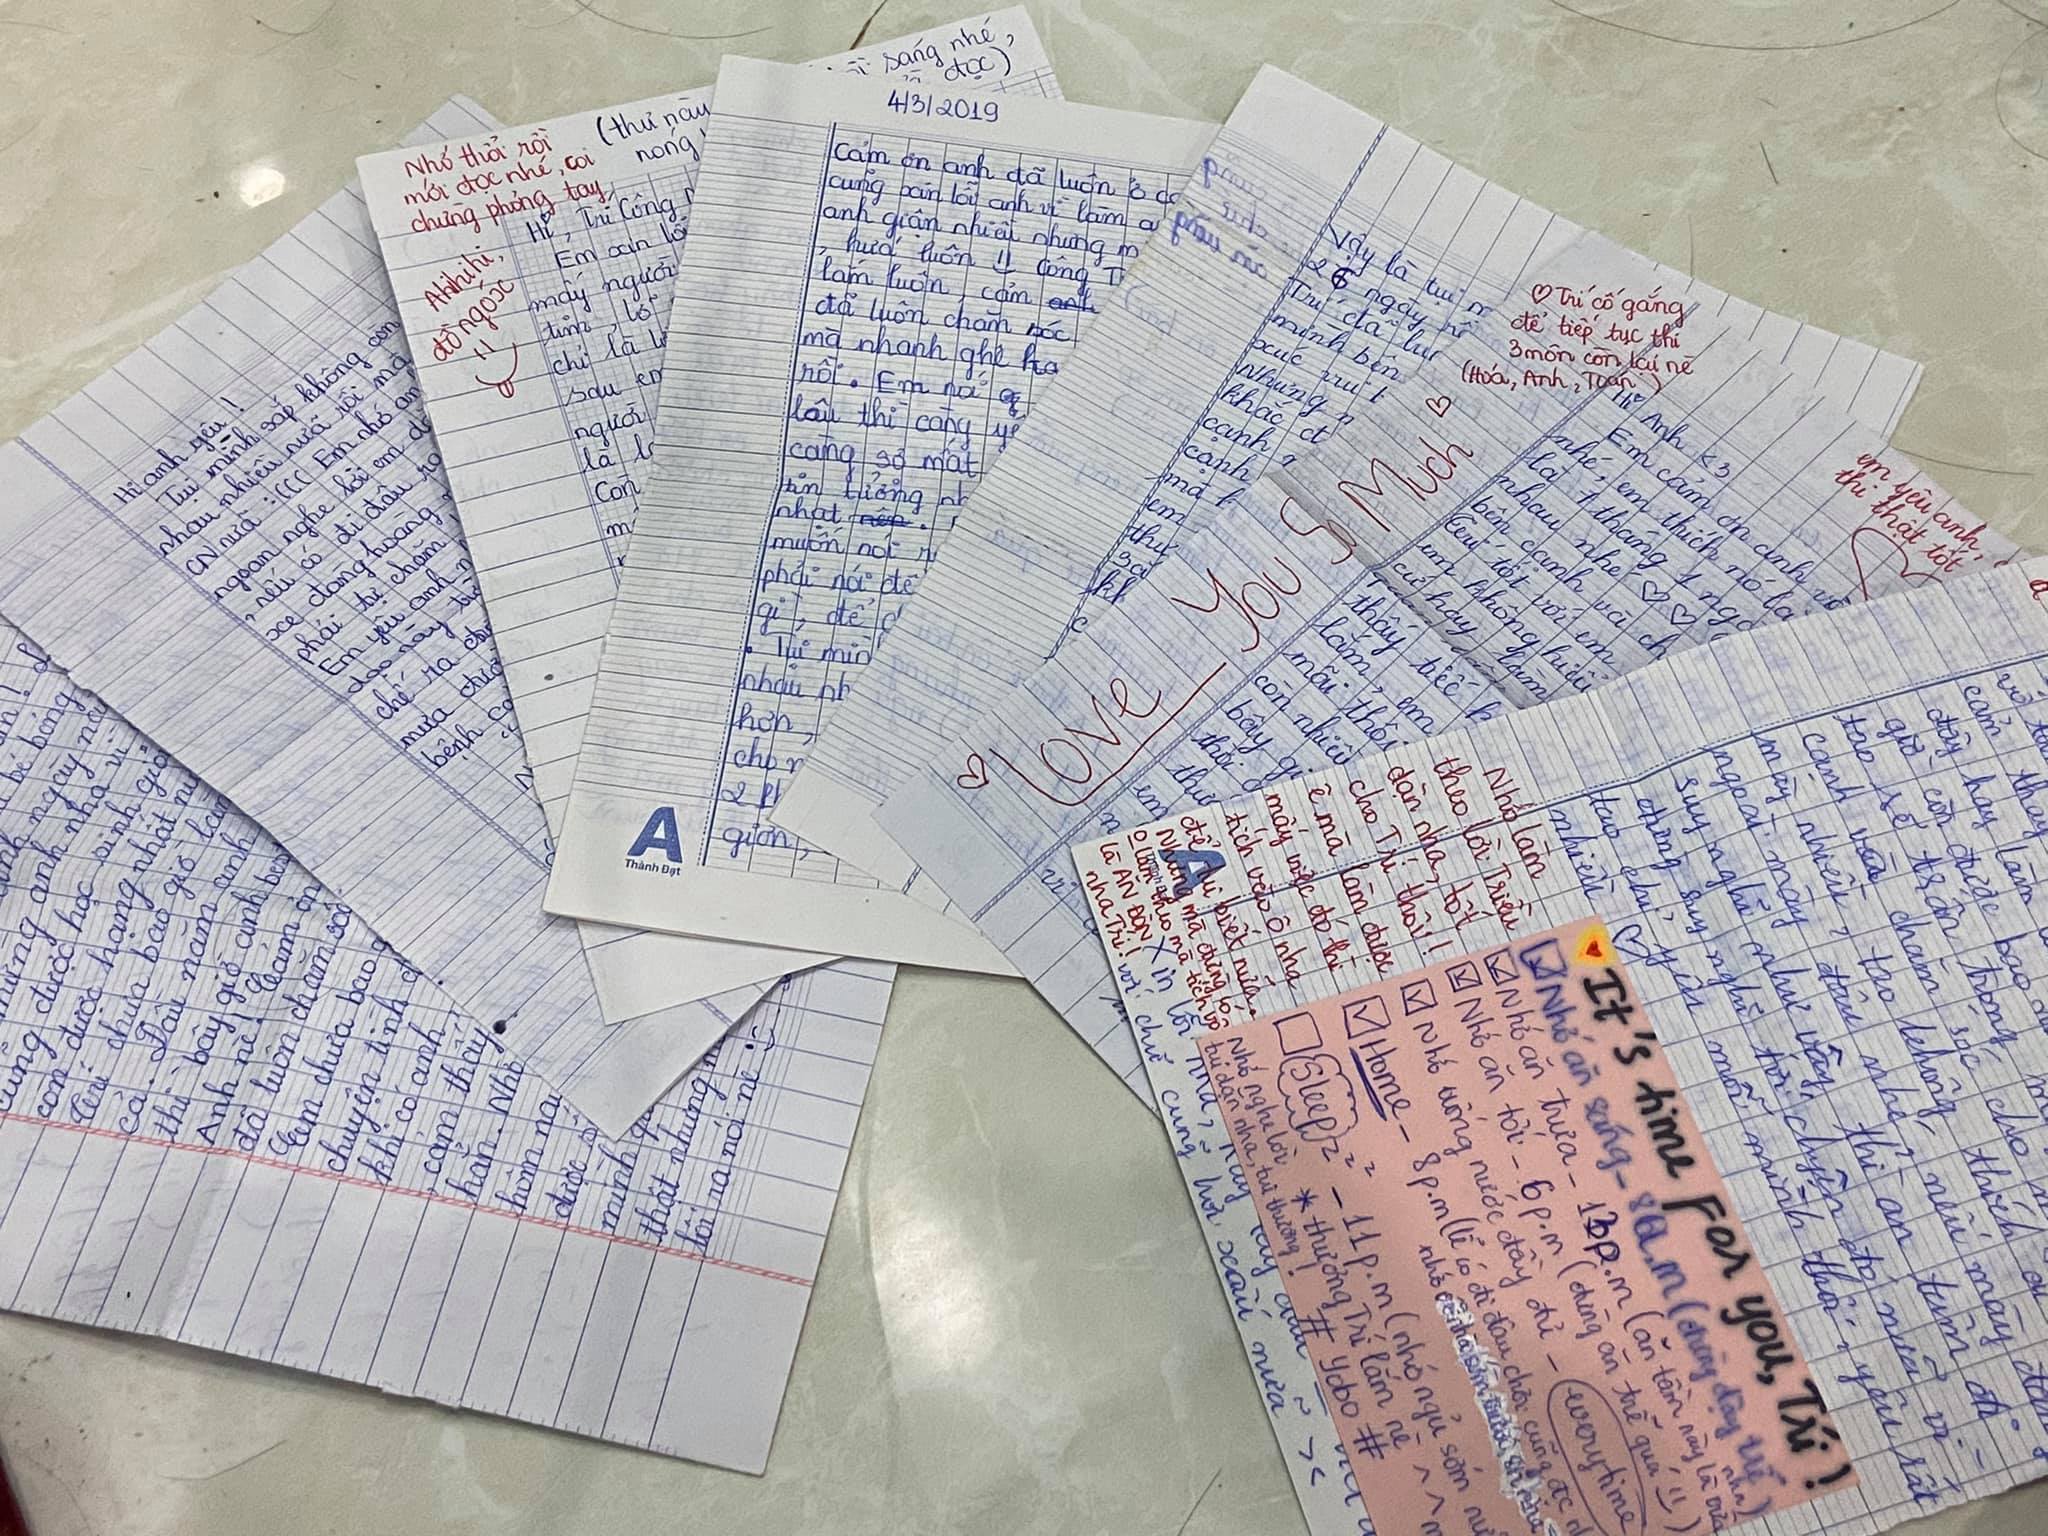 Chuyện tình “gà bông” của cặp đôi 10X được viết bằng hàng trăm lá thư tay